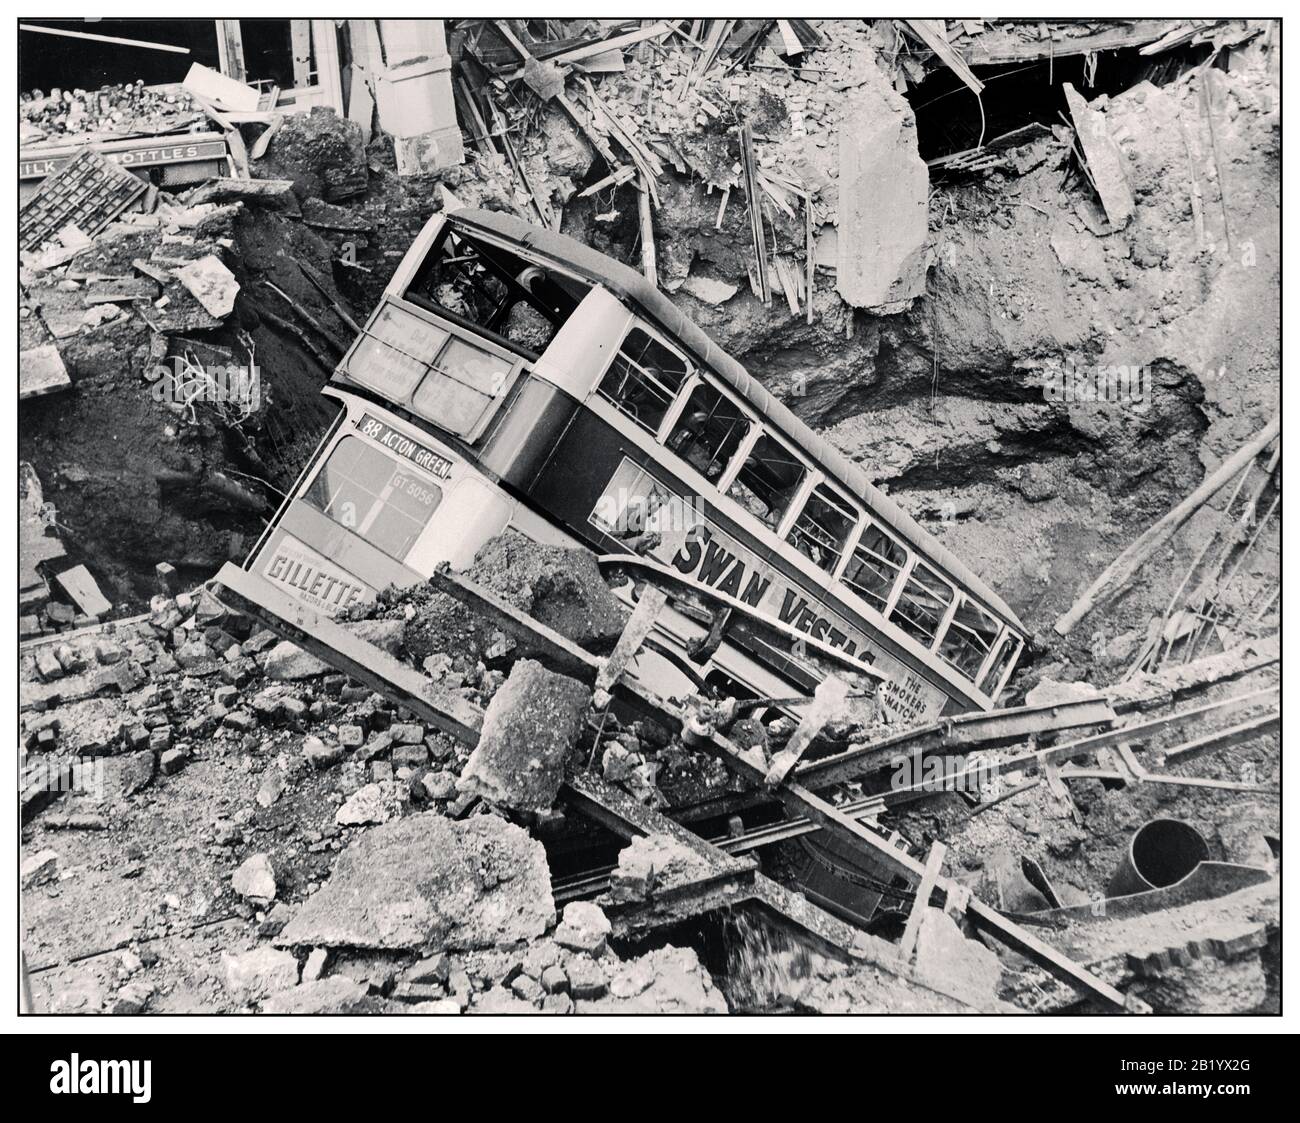 EL CRÁTER DE LA BOMBA DE AUTOBÚS BLITZ de LONDRES WW2 Daño de la bomba aérea nazi de 1940 en Gran Bretaña durante la Segunda Guerra Mundial Después de un bombardeo, un autobús de Londres se encuentra en un cráter de bomba en Balham, al sur de Londres. Segunda Guerra Mundial Foto de stock